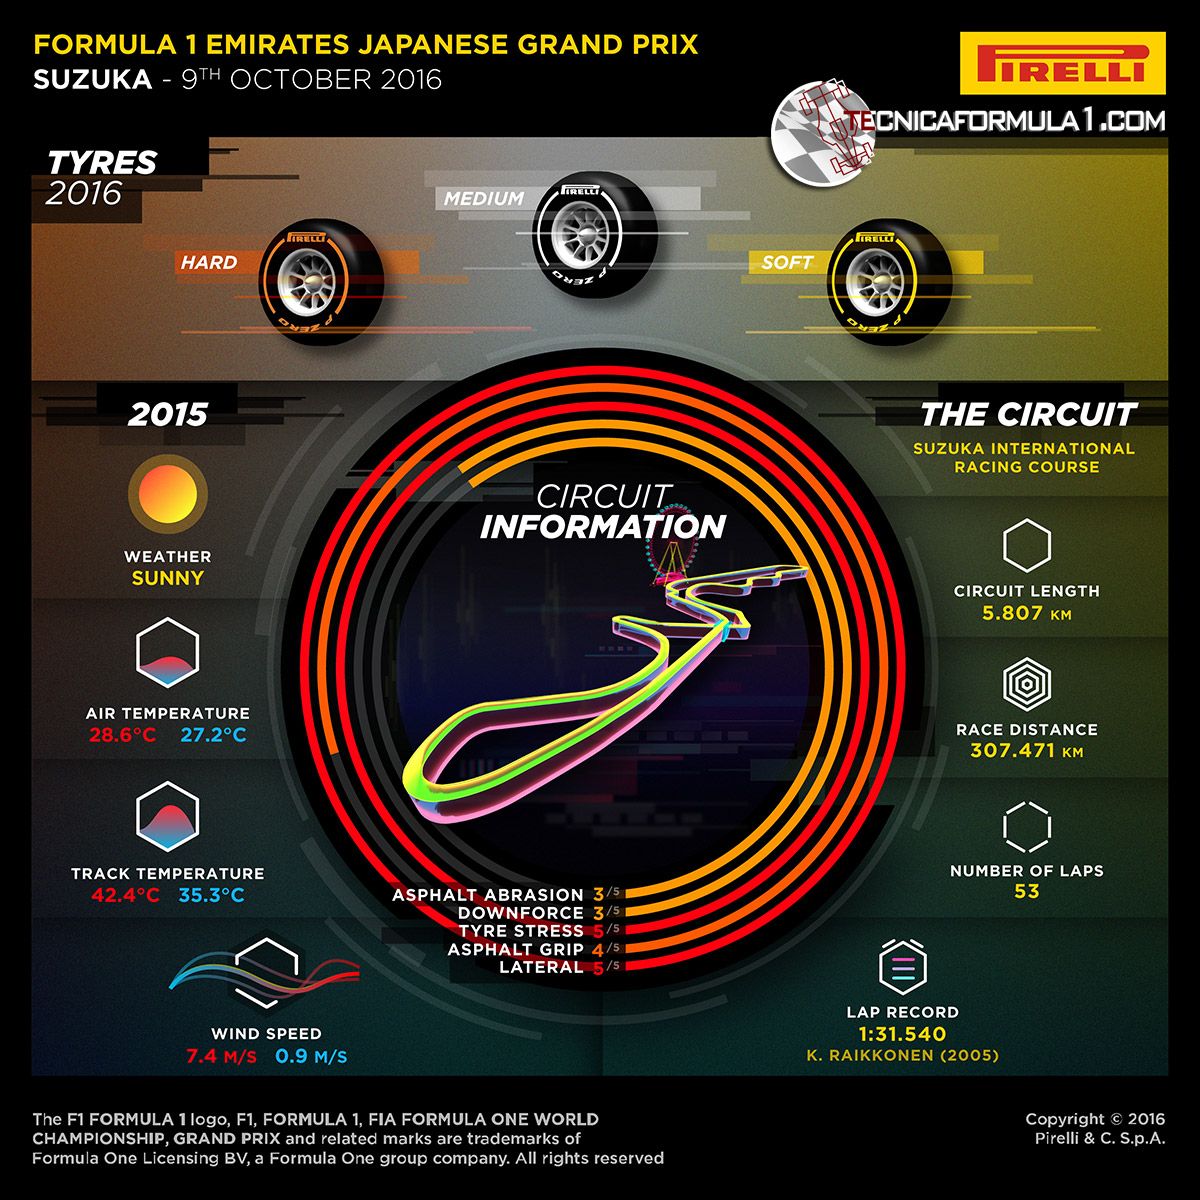 La preview della Pirelli del GP del Giappone 2016 (foto da: tecnicaformula1.com)